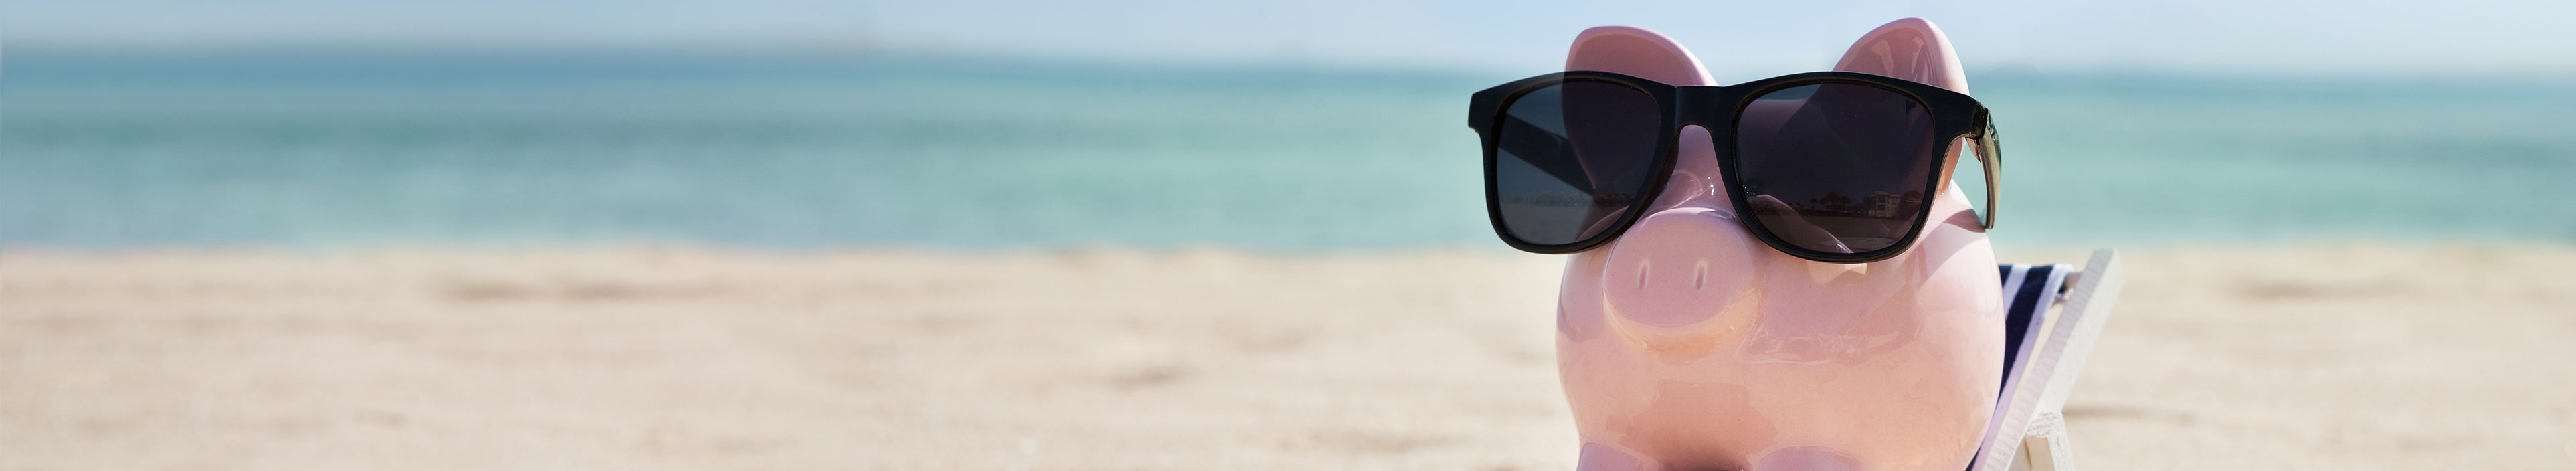 Sparschwein mit einer Sonnenbrille liegt auf einer Liege am Strand